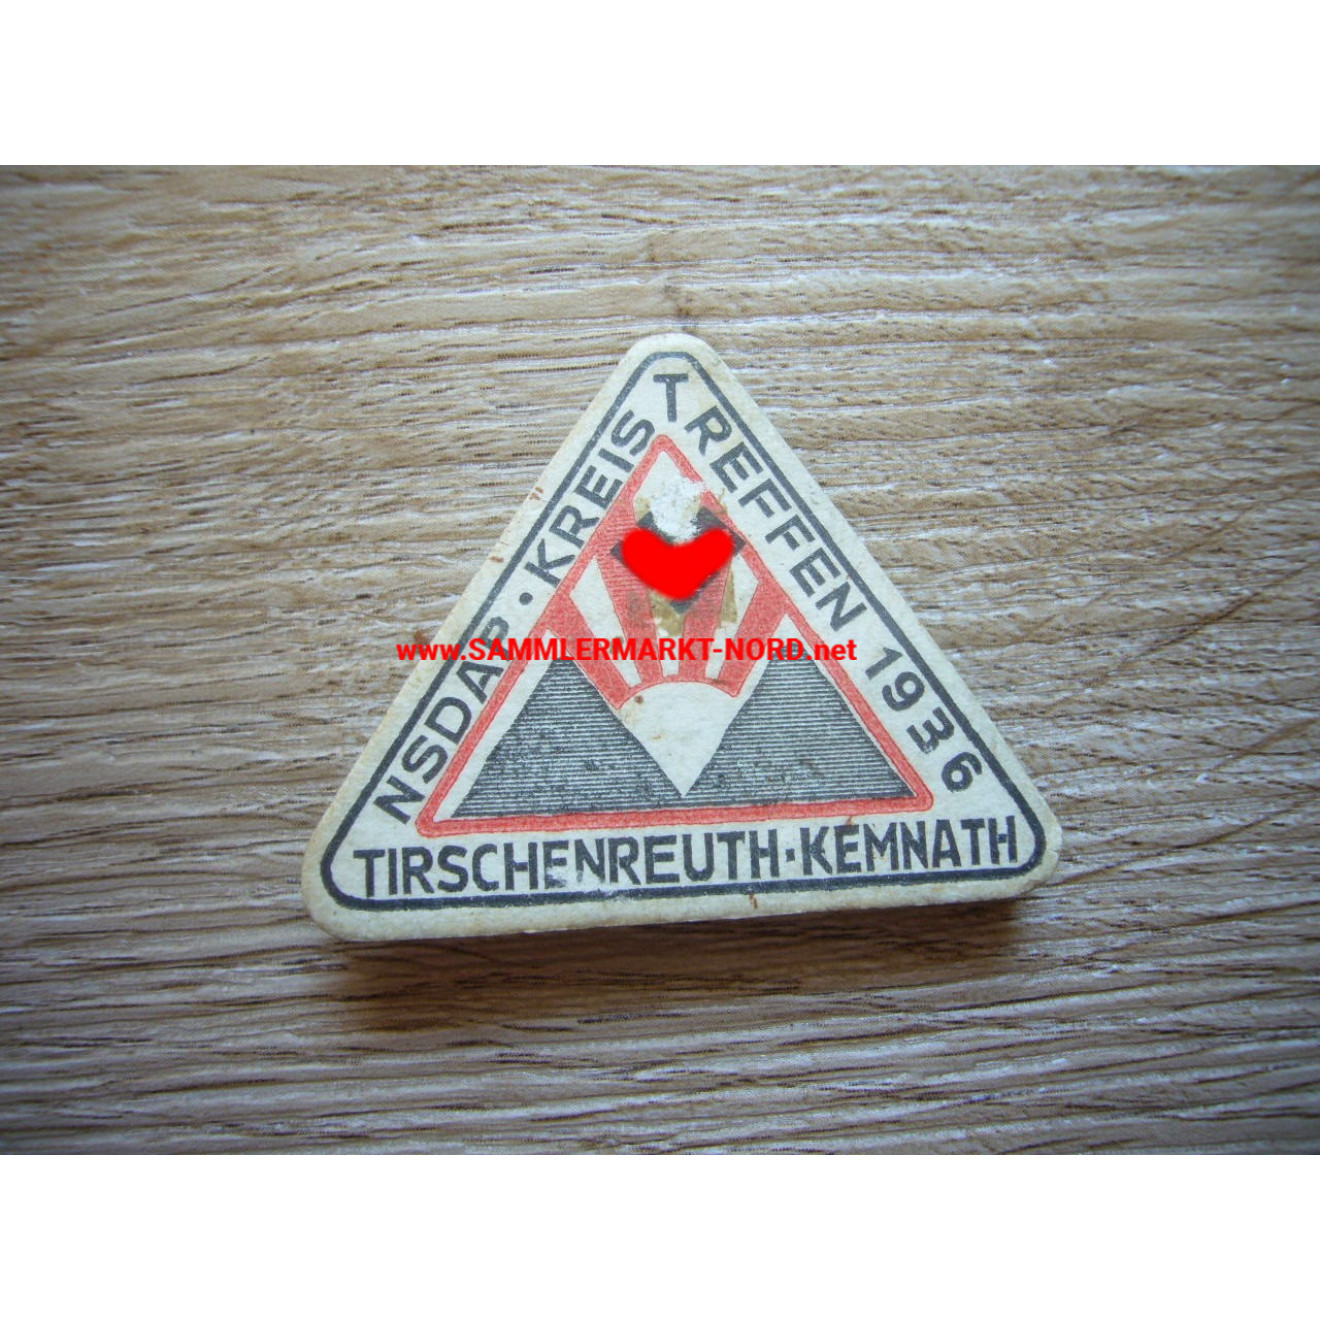 NSDAP district meeting 1936 - Tirschenreuth - Kemnath